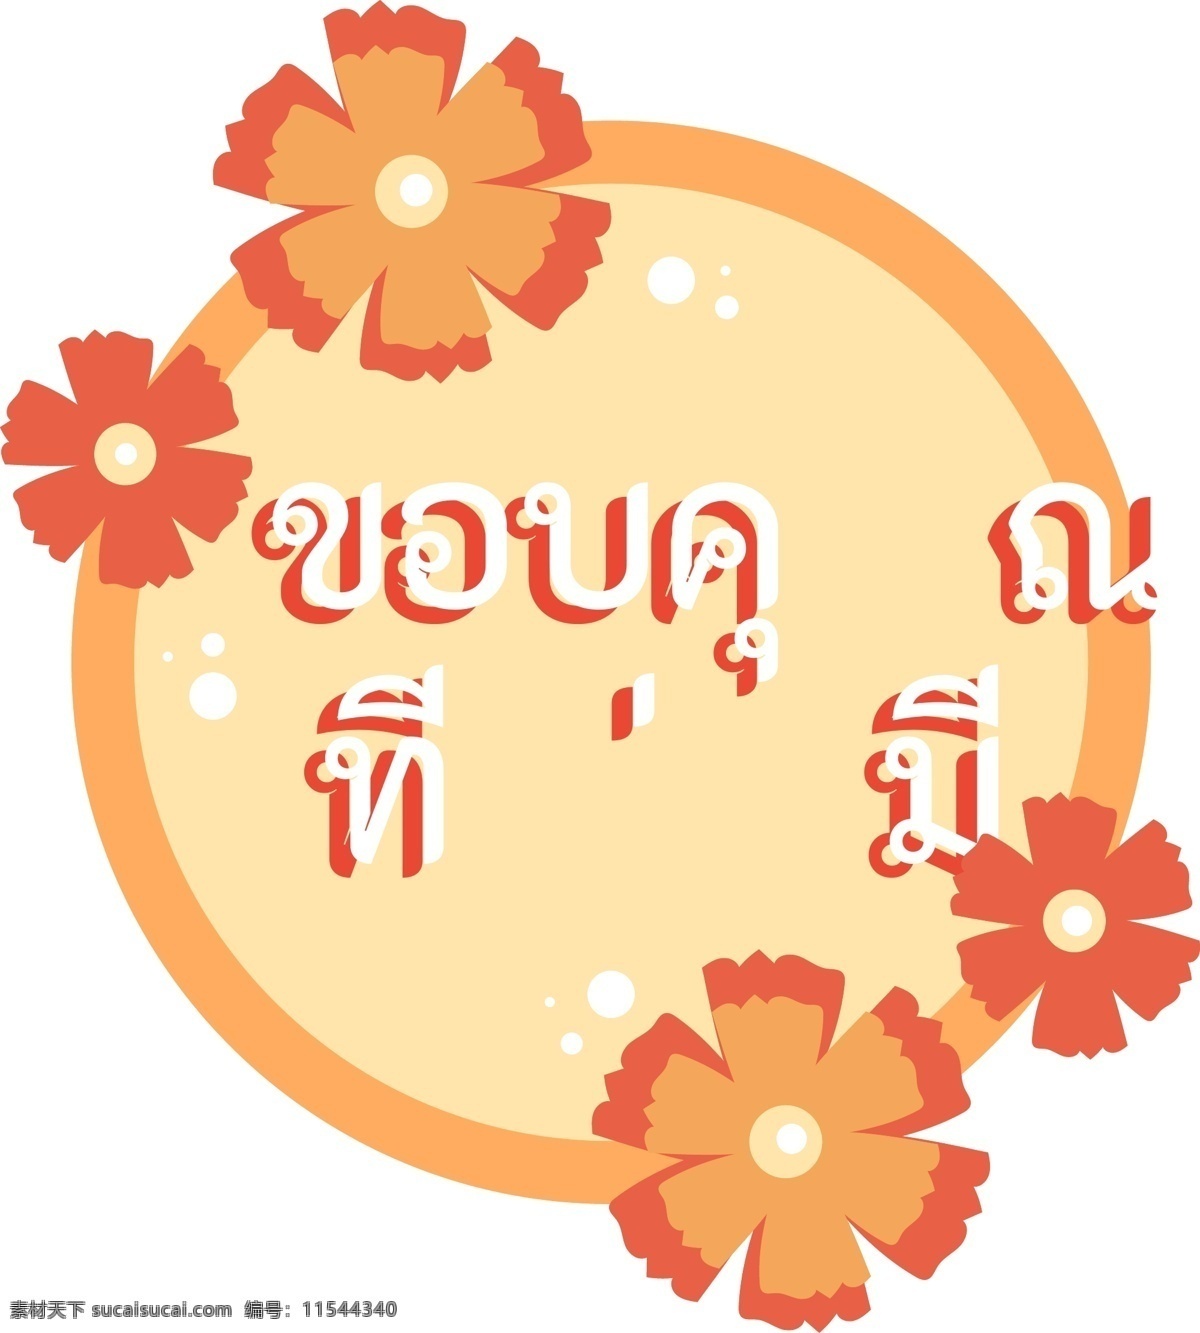 泰国 字母 字体 圆圆 浅 橙色 橙 花 谢谢你 你的花 圆 淡橙色 橙木